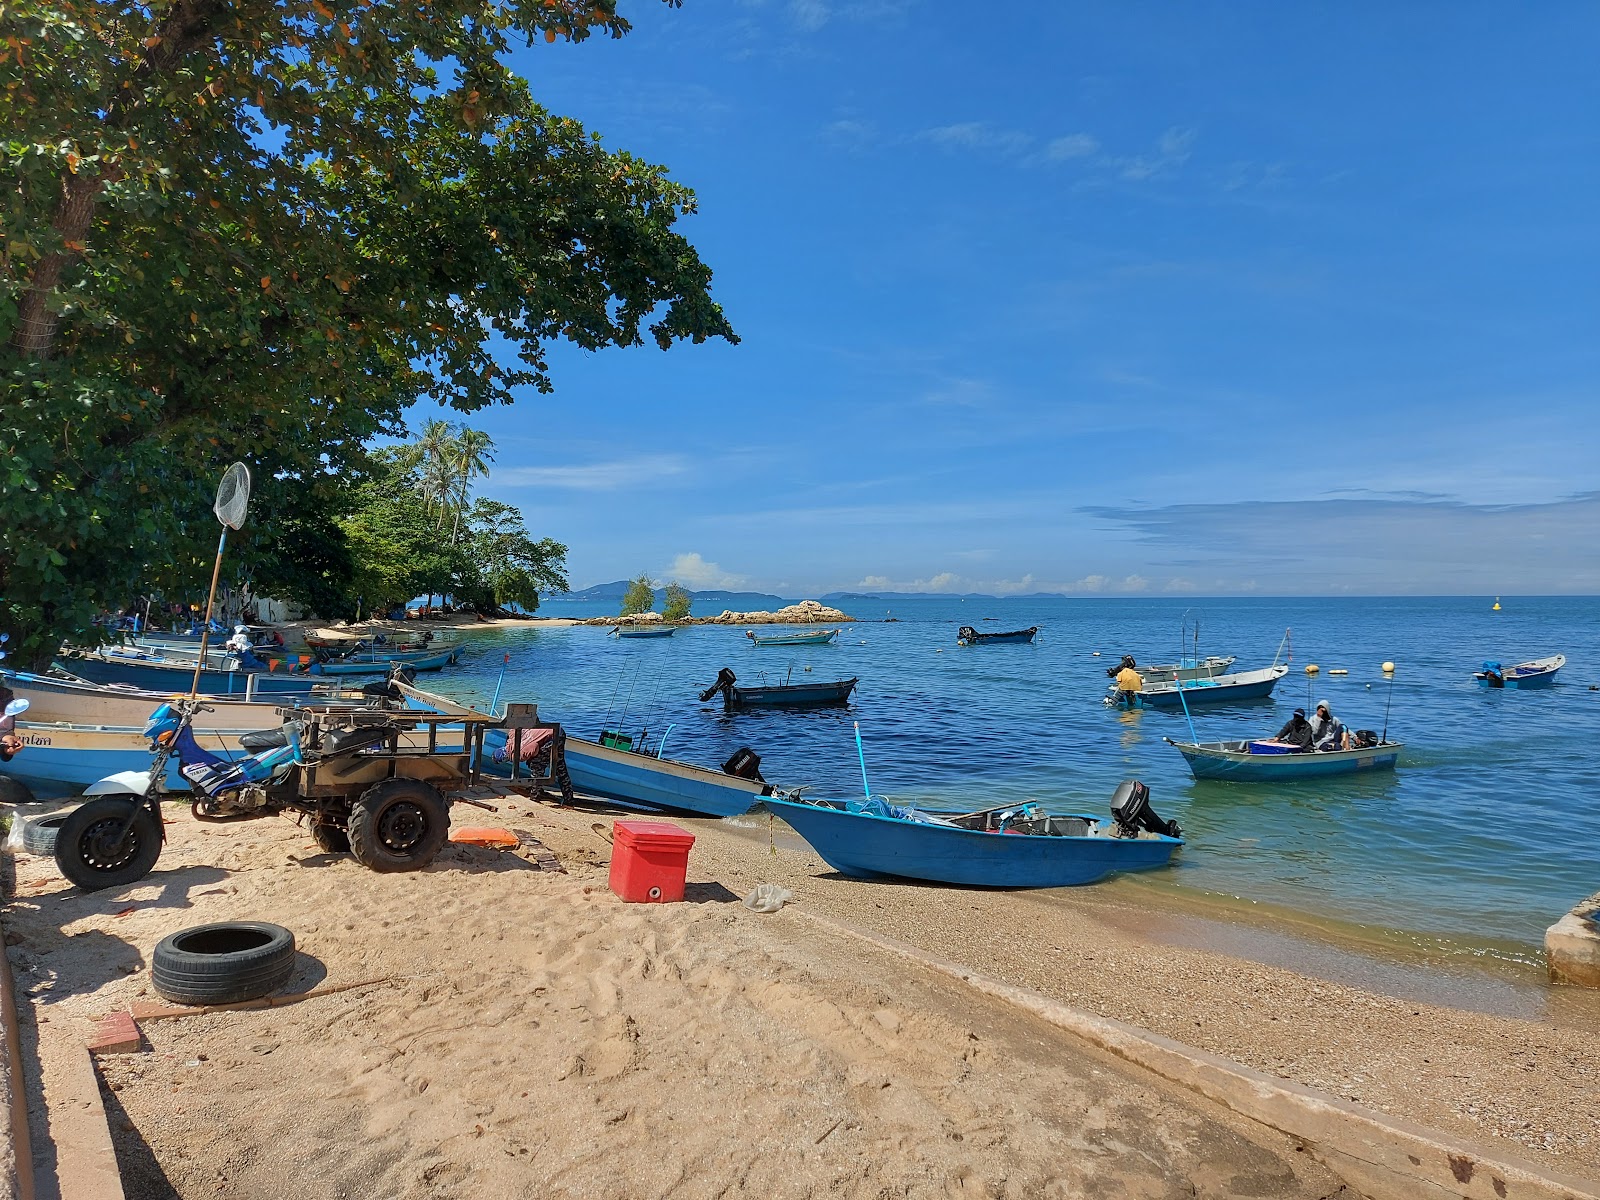 Foto af Wongamat beach - populært sted blandt afslapningskendere